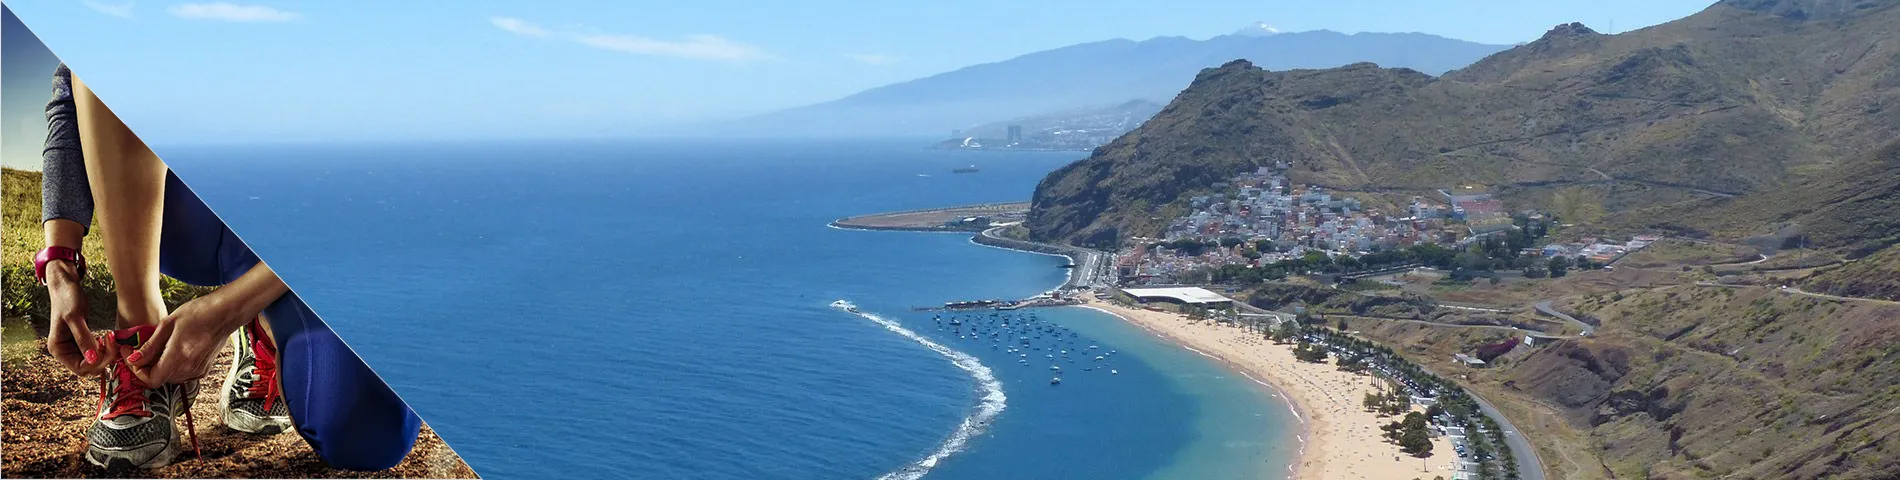 Tenerife - Španělština a Další sporty